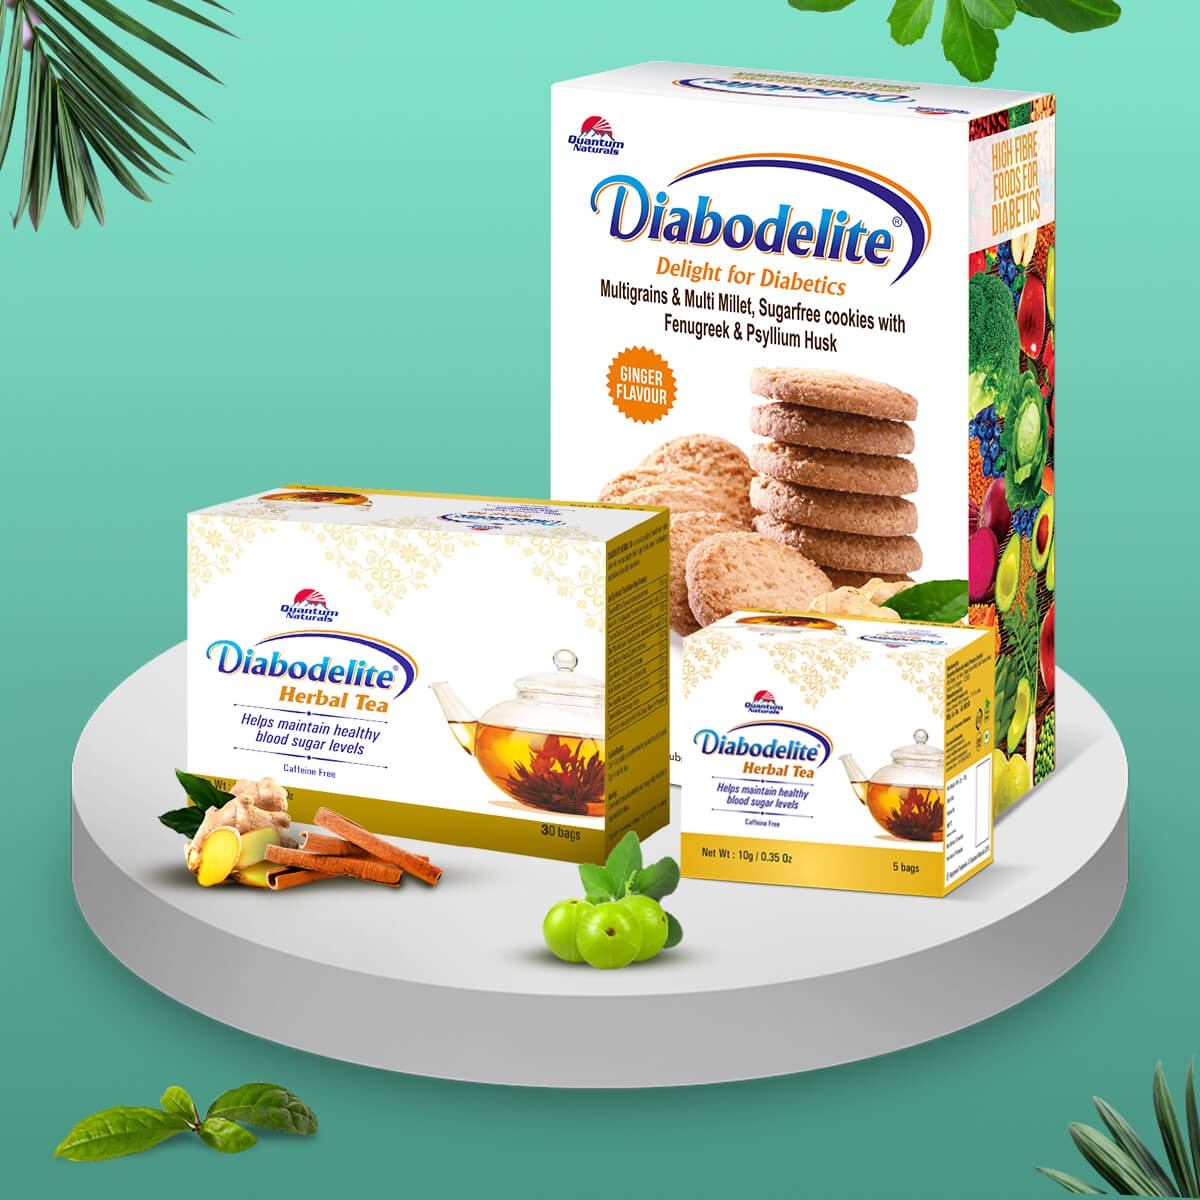 Diabodelite Cookies + Tea 30's ( Diabodelite Tea Pack of 5 Free)